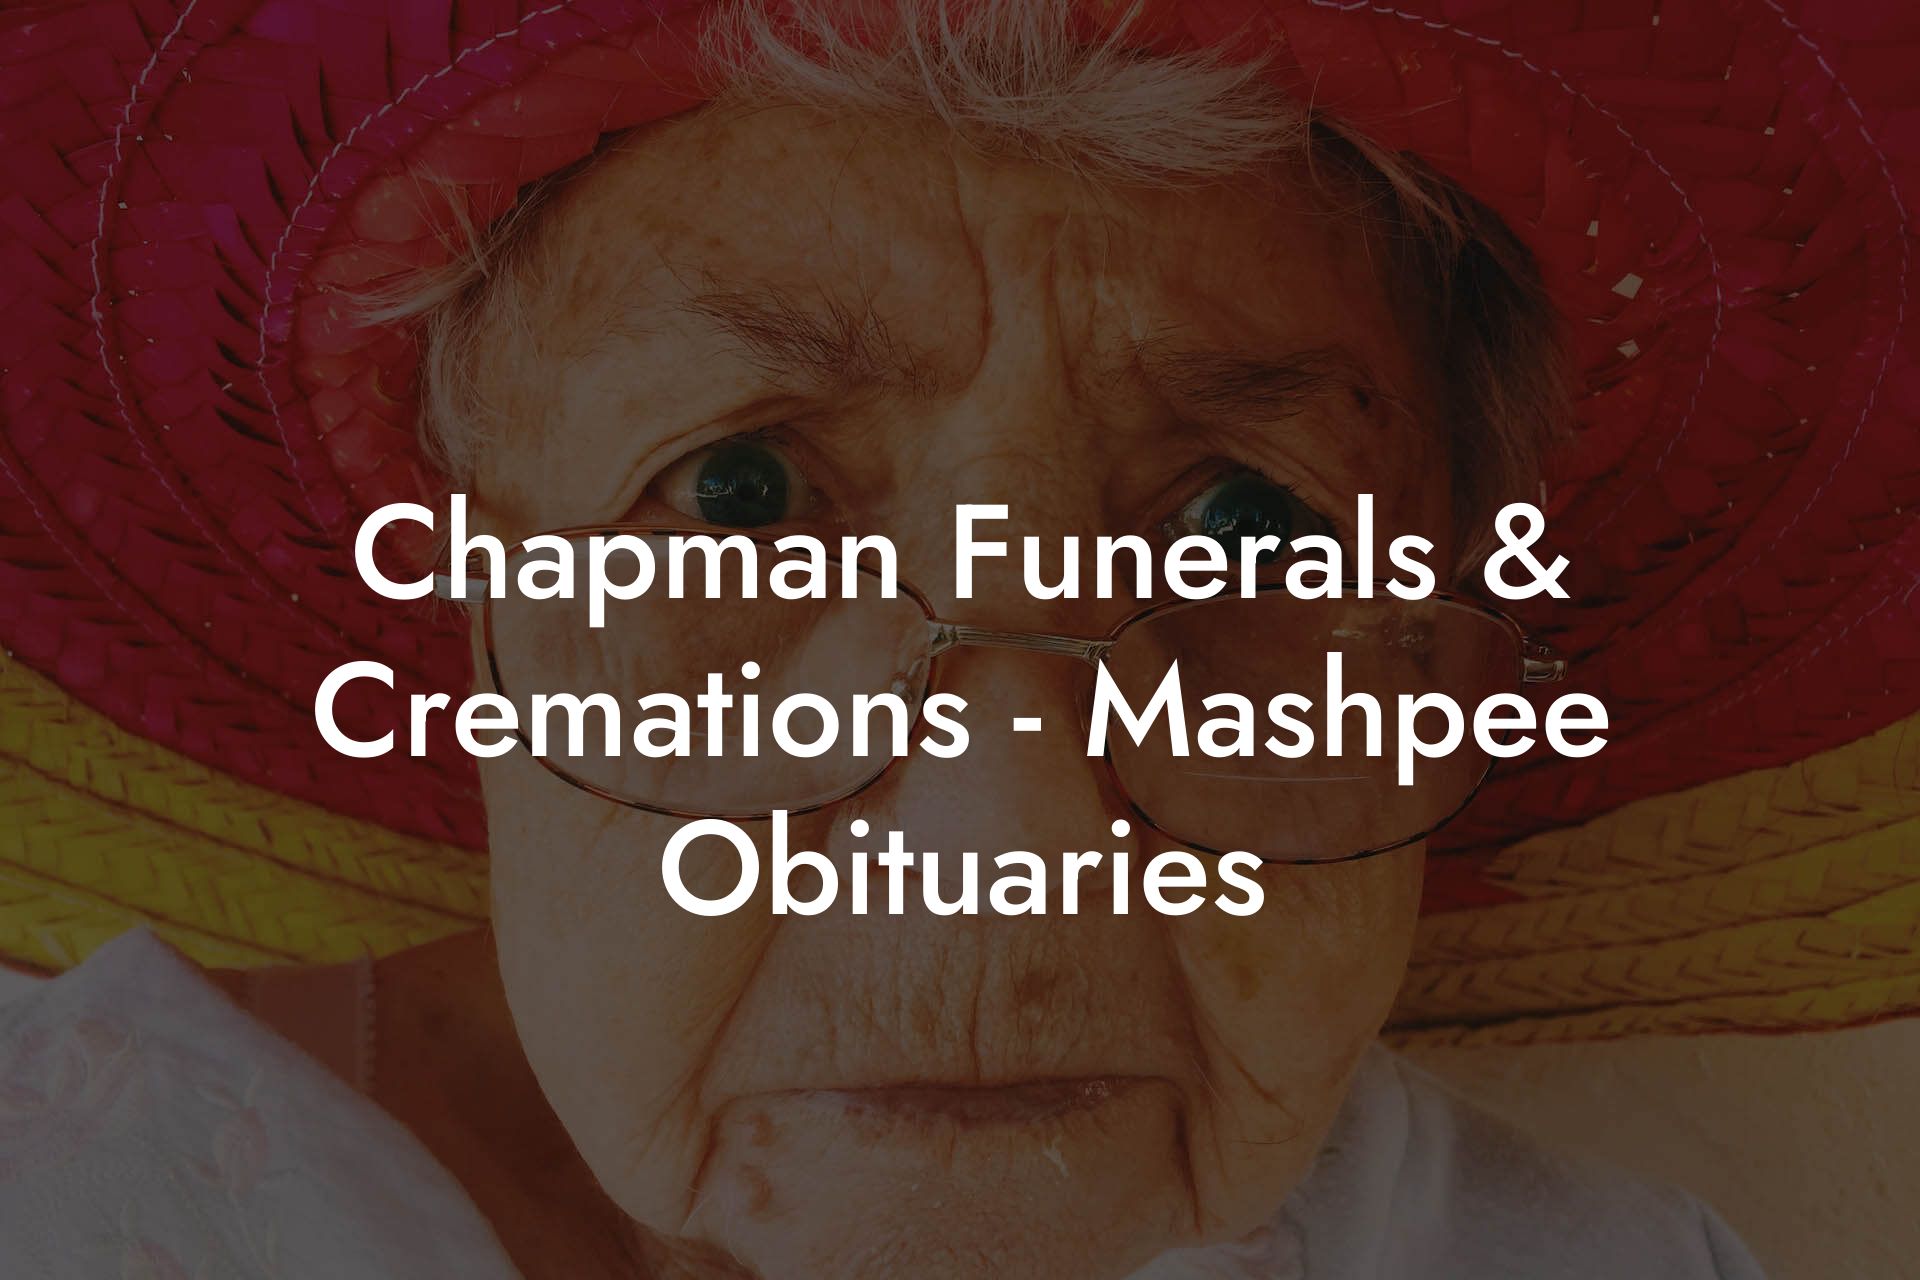 Chapman Funerals & Cremations - Mashpee Obituaries